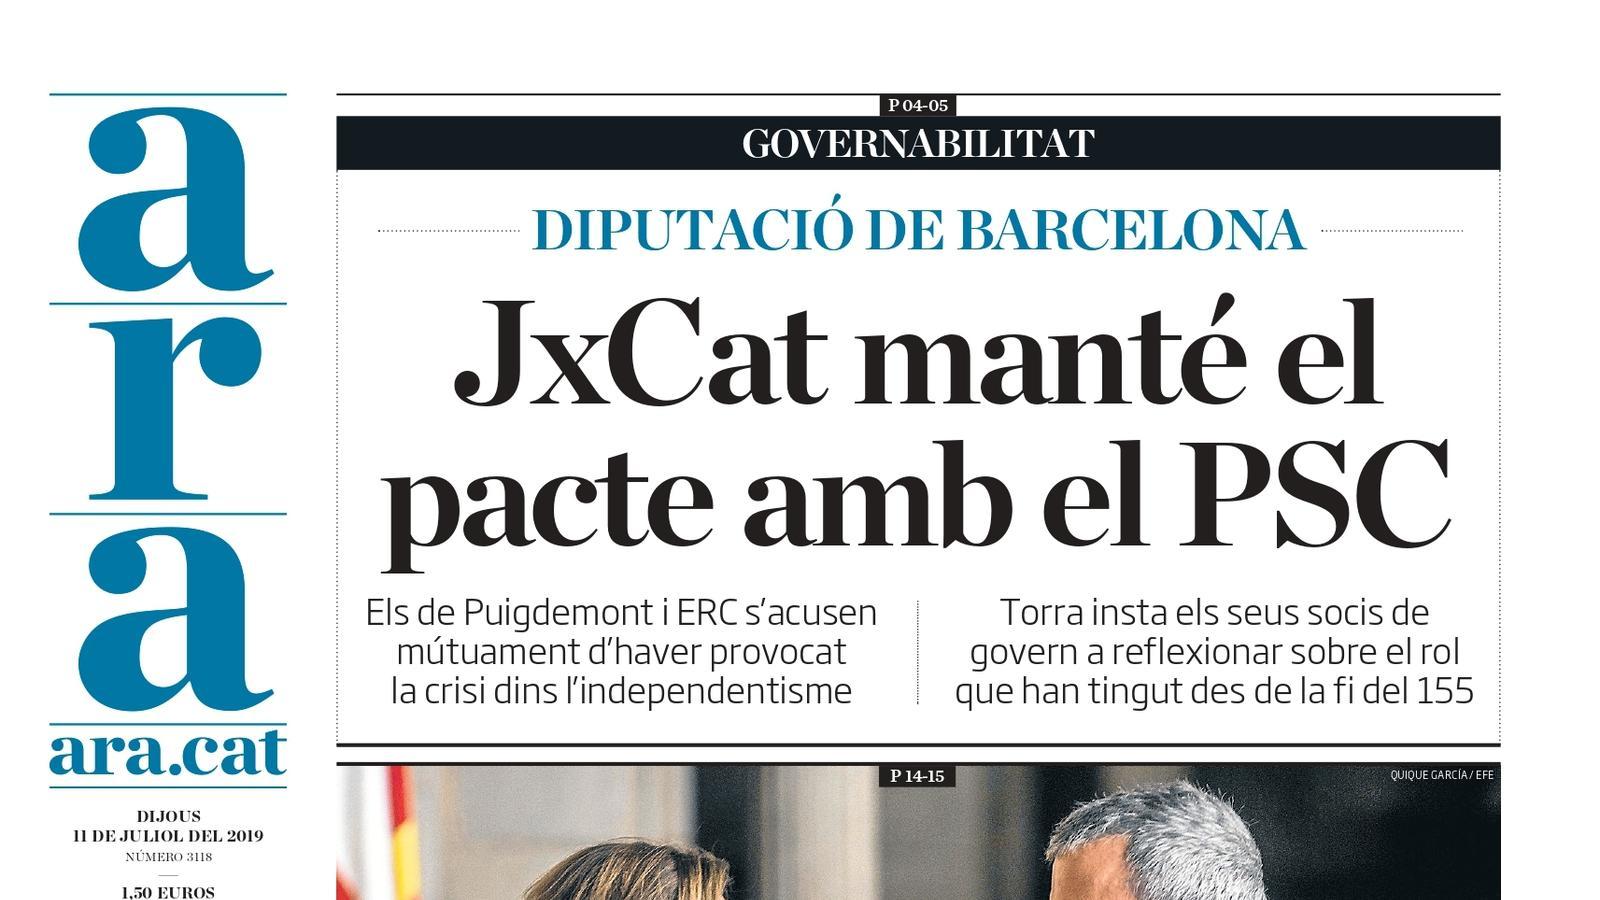 "JxCat manté el pacte amb el PSC a la Diputació", la portada de l'ARA